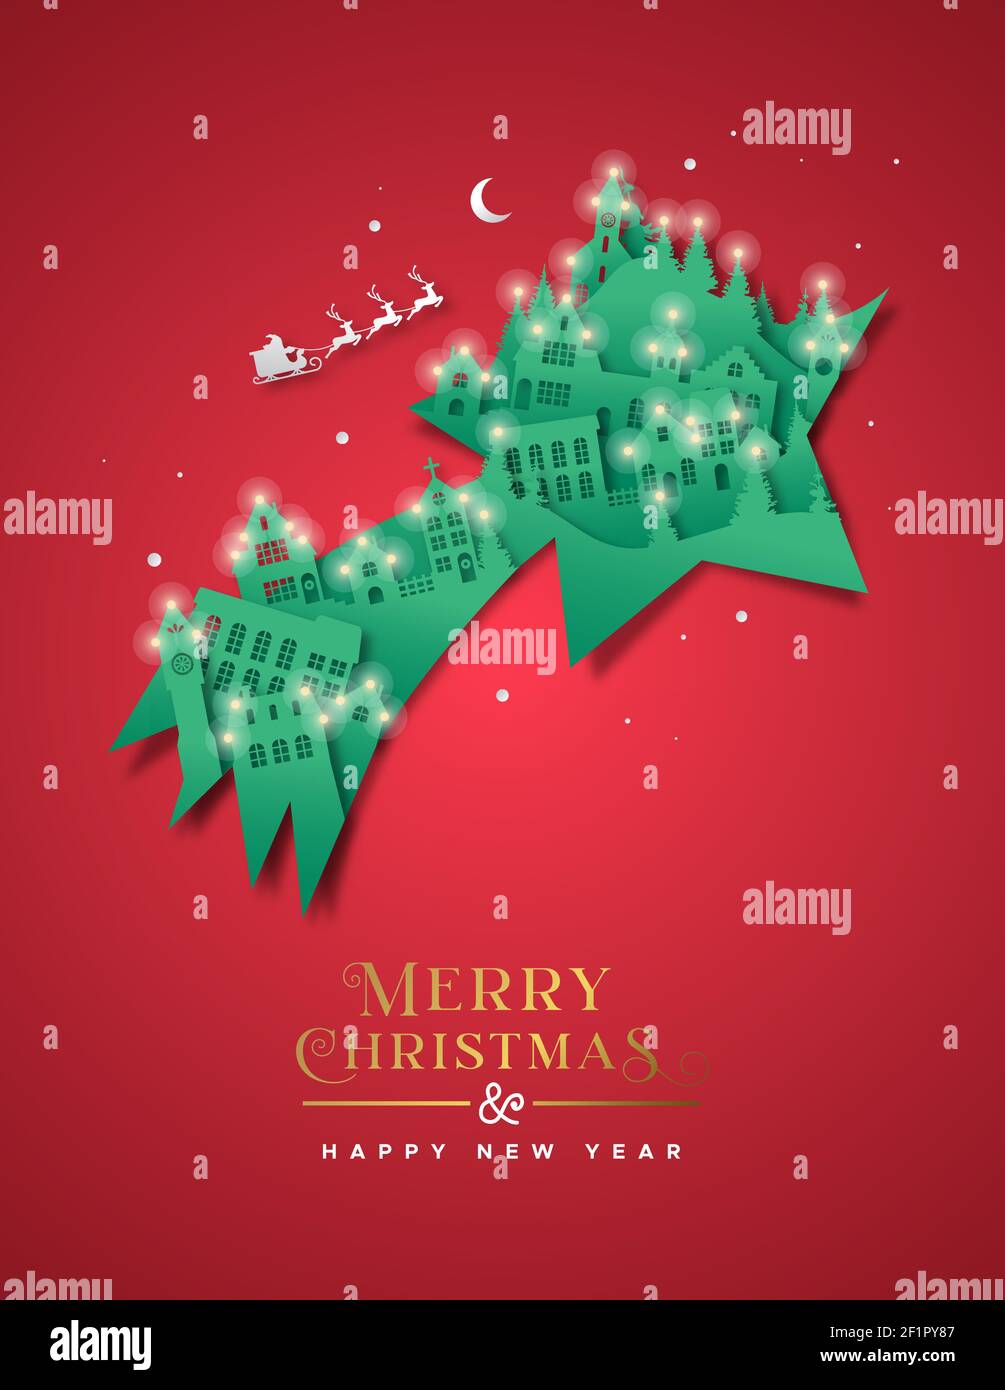 Feliz Navidad Feliz año Nuevo tarjeta de felicitación ilustración de la ciudad de invierno 3D corte en papel en forma de estrella fugaz. Papel tallado realista recorte de artesanía con Ilustración del Vector